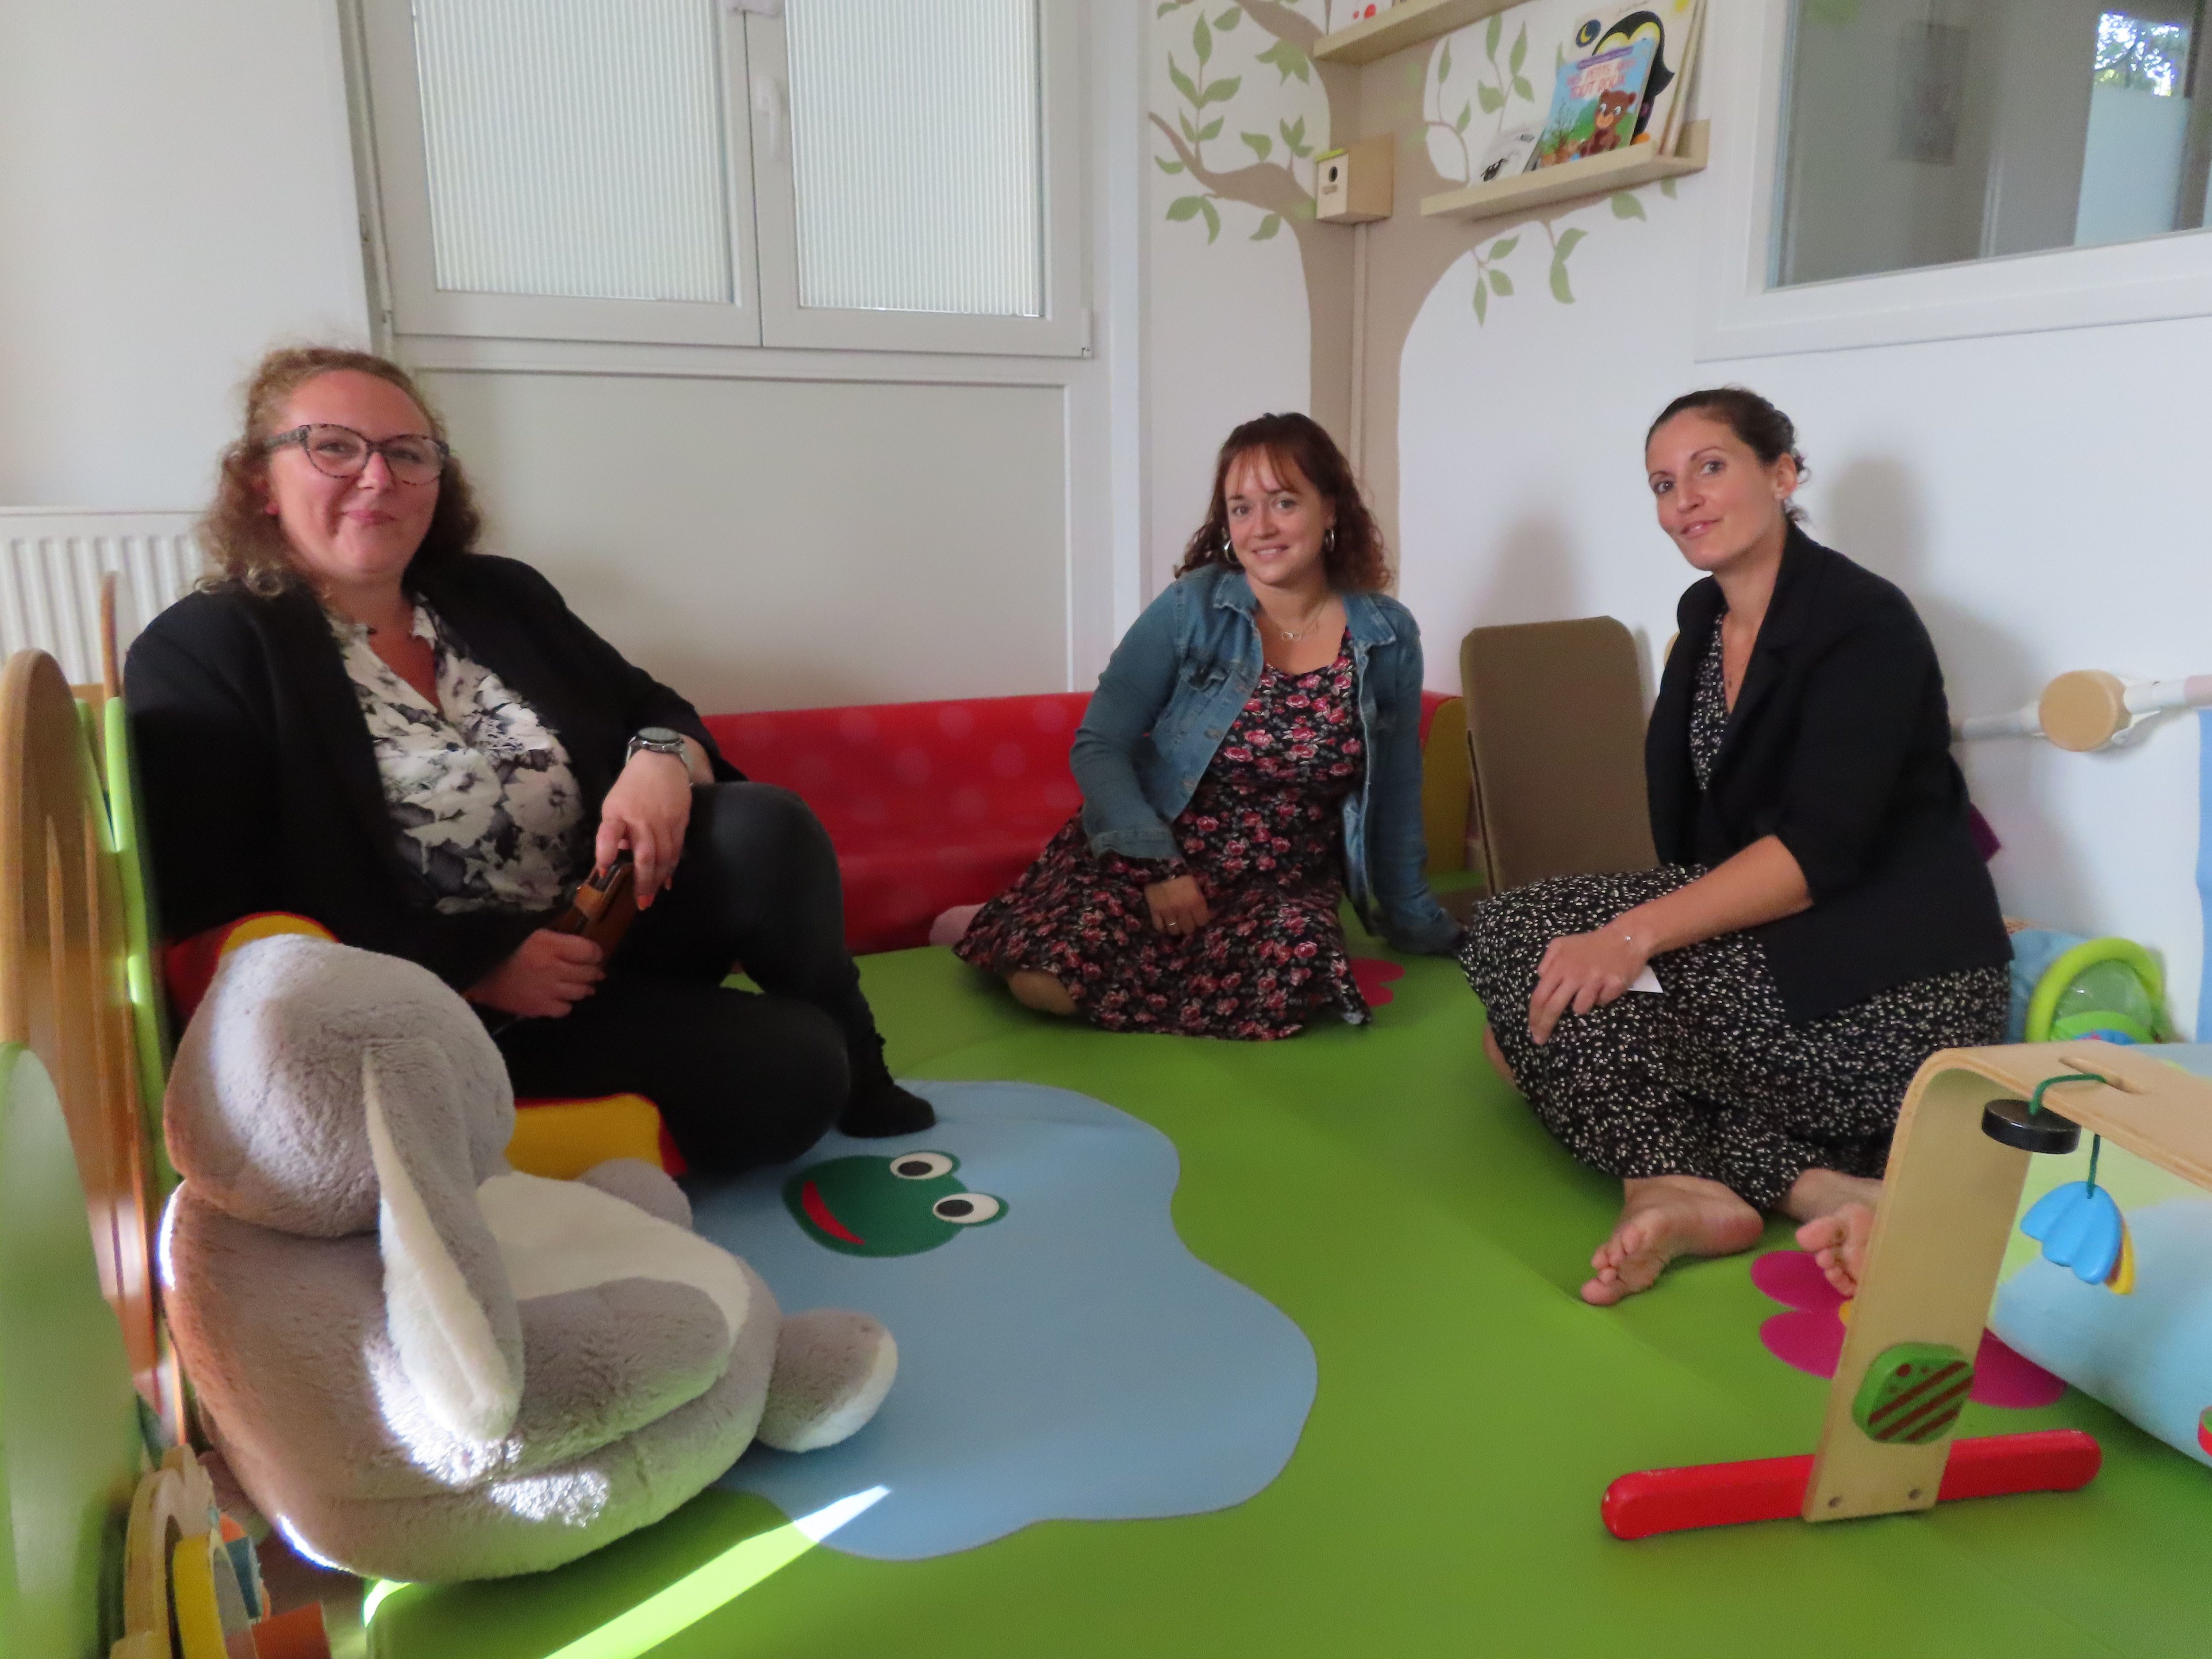 Les trois fondatrices de l'association MAM'EO, Gaëlle Borgiasz, Harmony Wagne et Nathalie Nomdedeu (de gauche à droite), ouvrent ce lundi la première maison d'assistantes maternelles inclusive de l'Oise. LP/H.S.